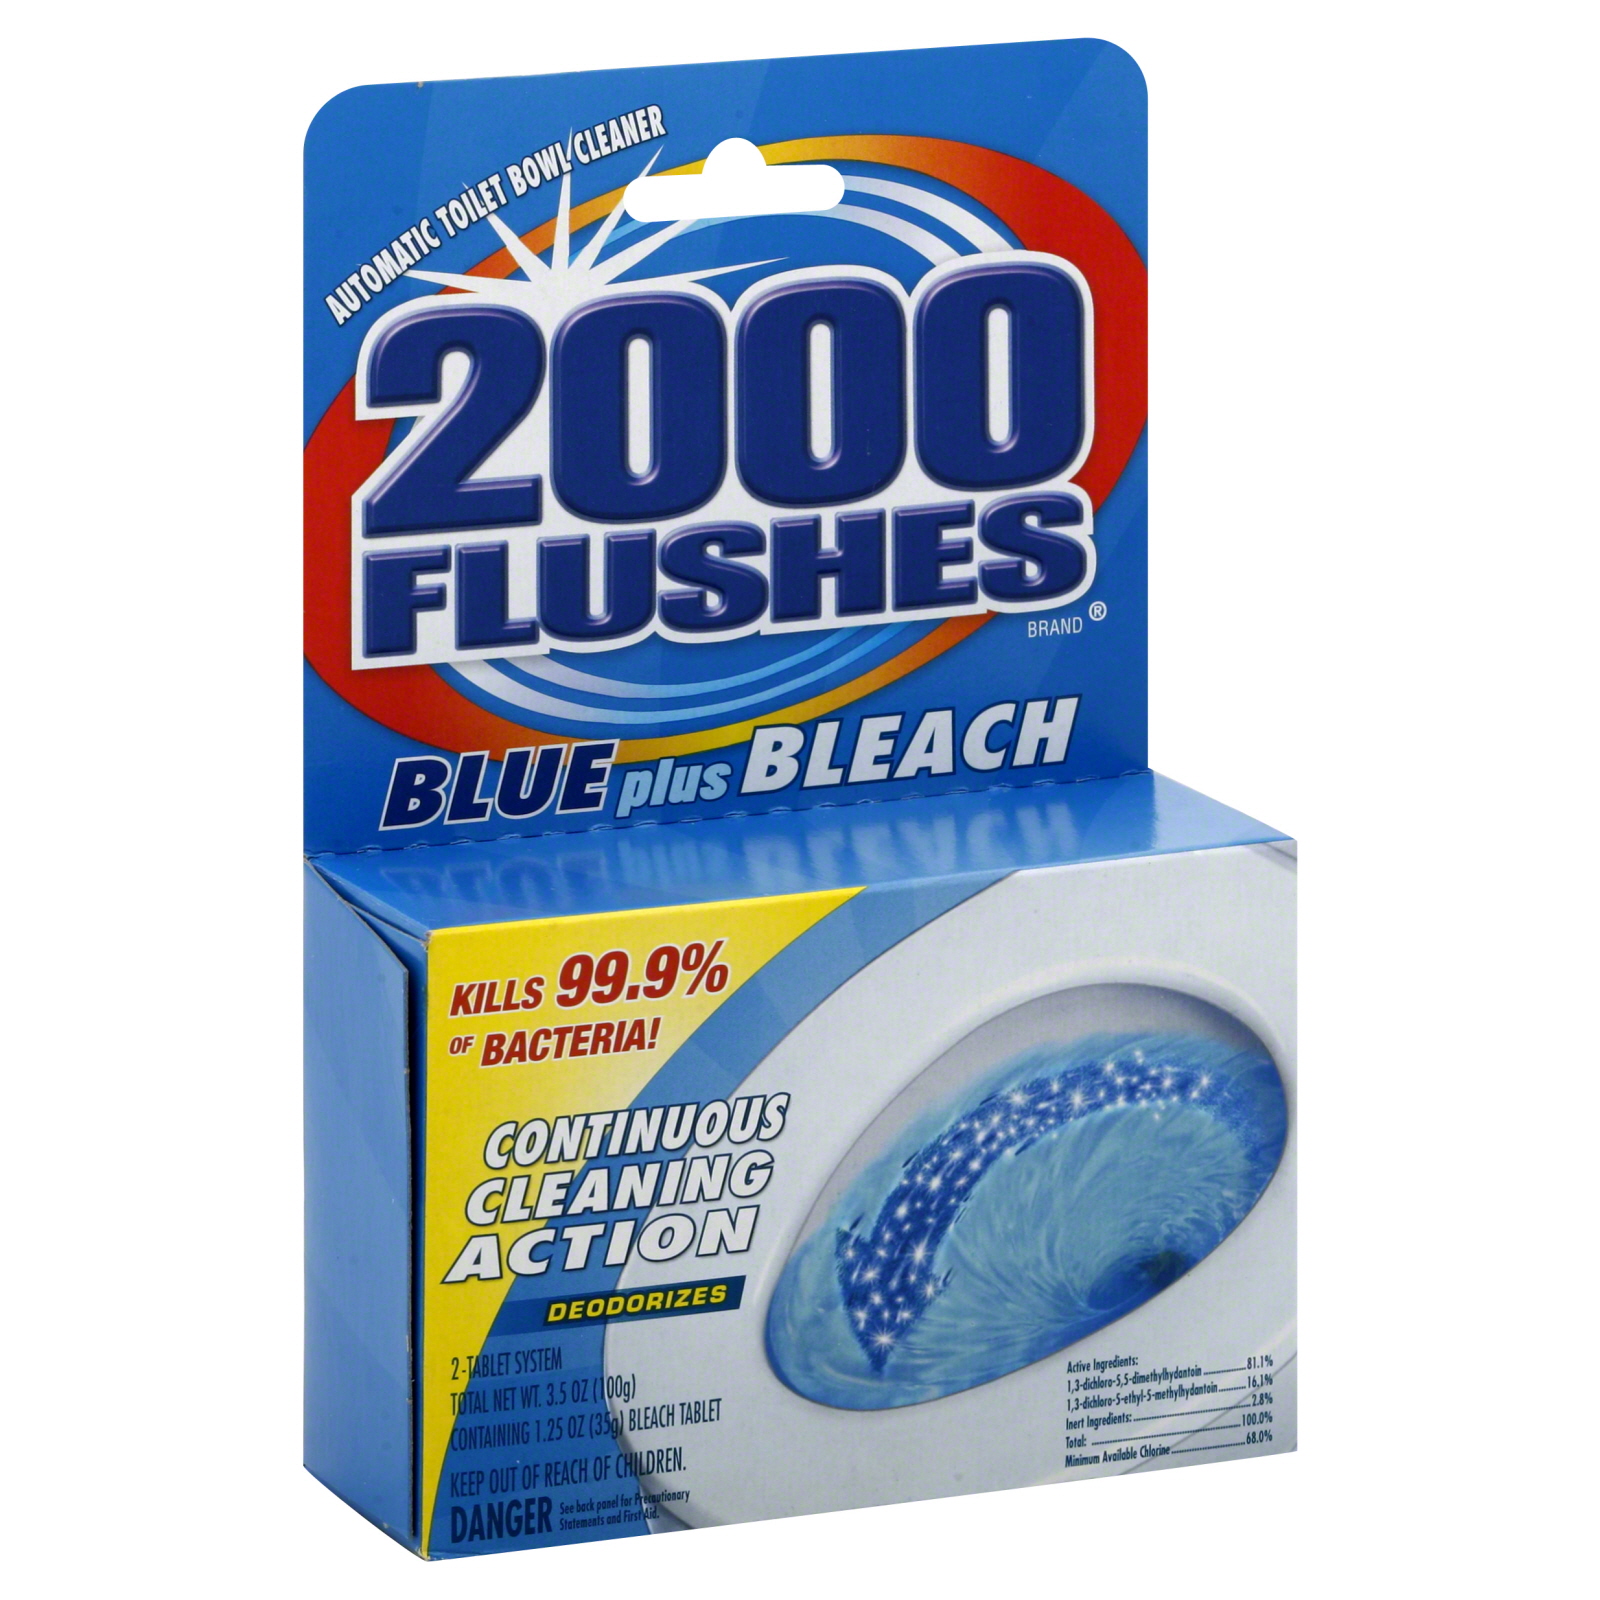 2000 Flushes Automatic Toilet Bowl Cleaner, Blue Plus Bleach, 2 tablets [3.5 oz (100 g)]